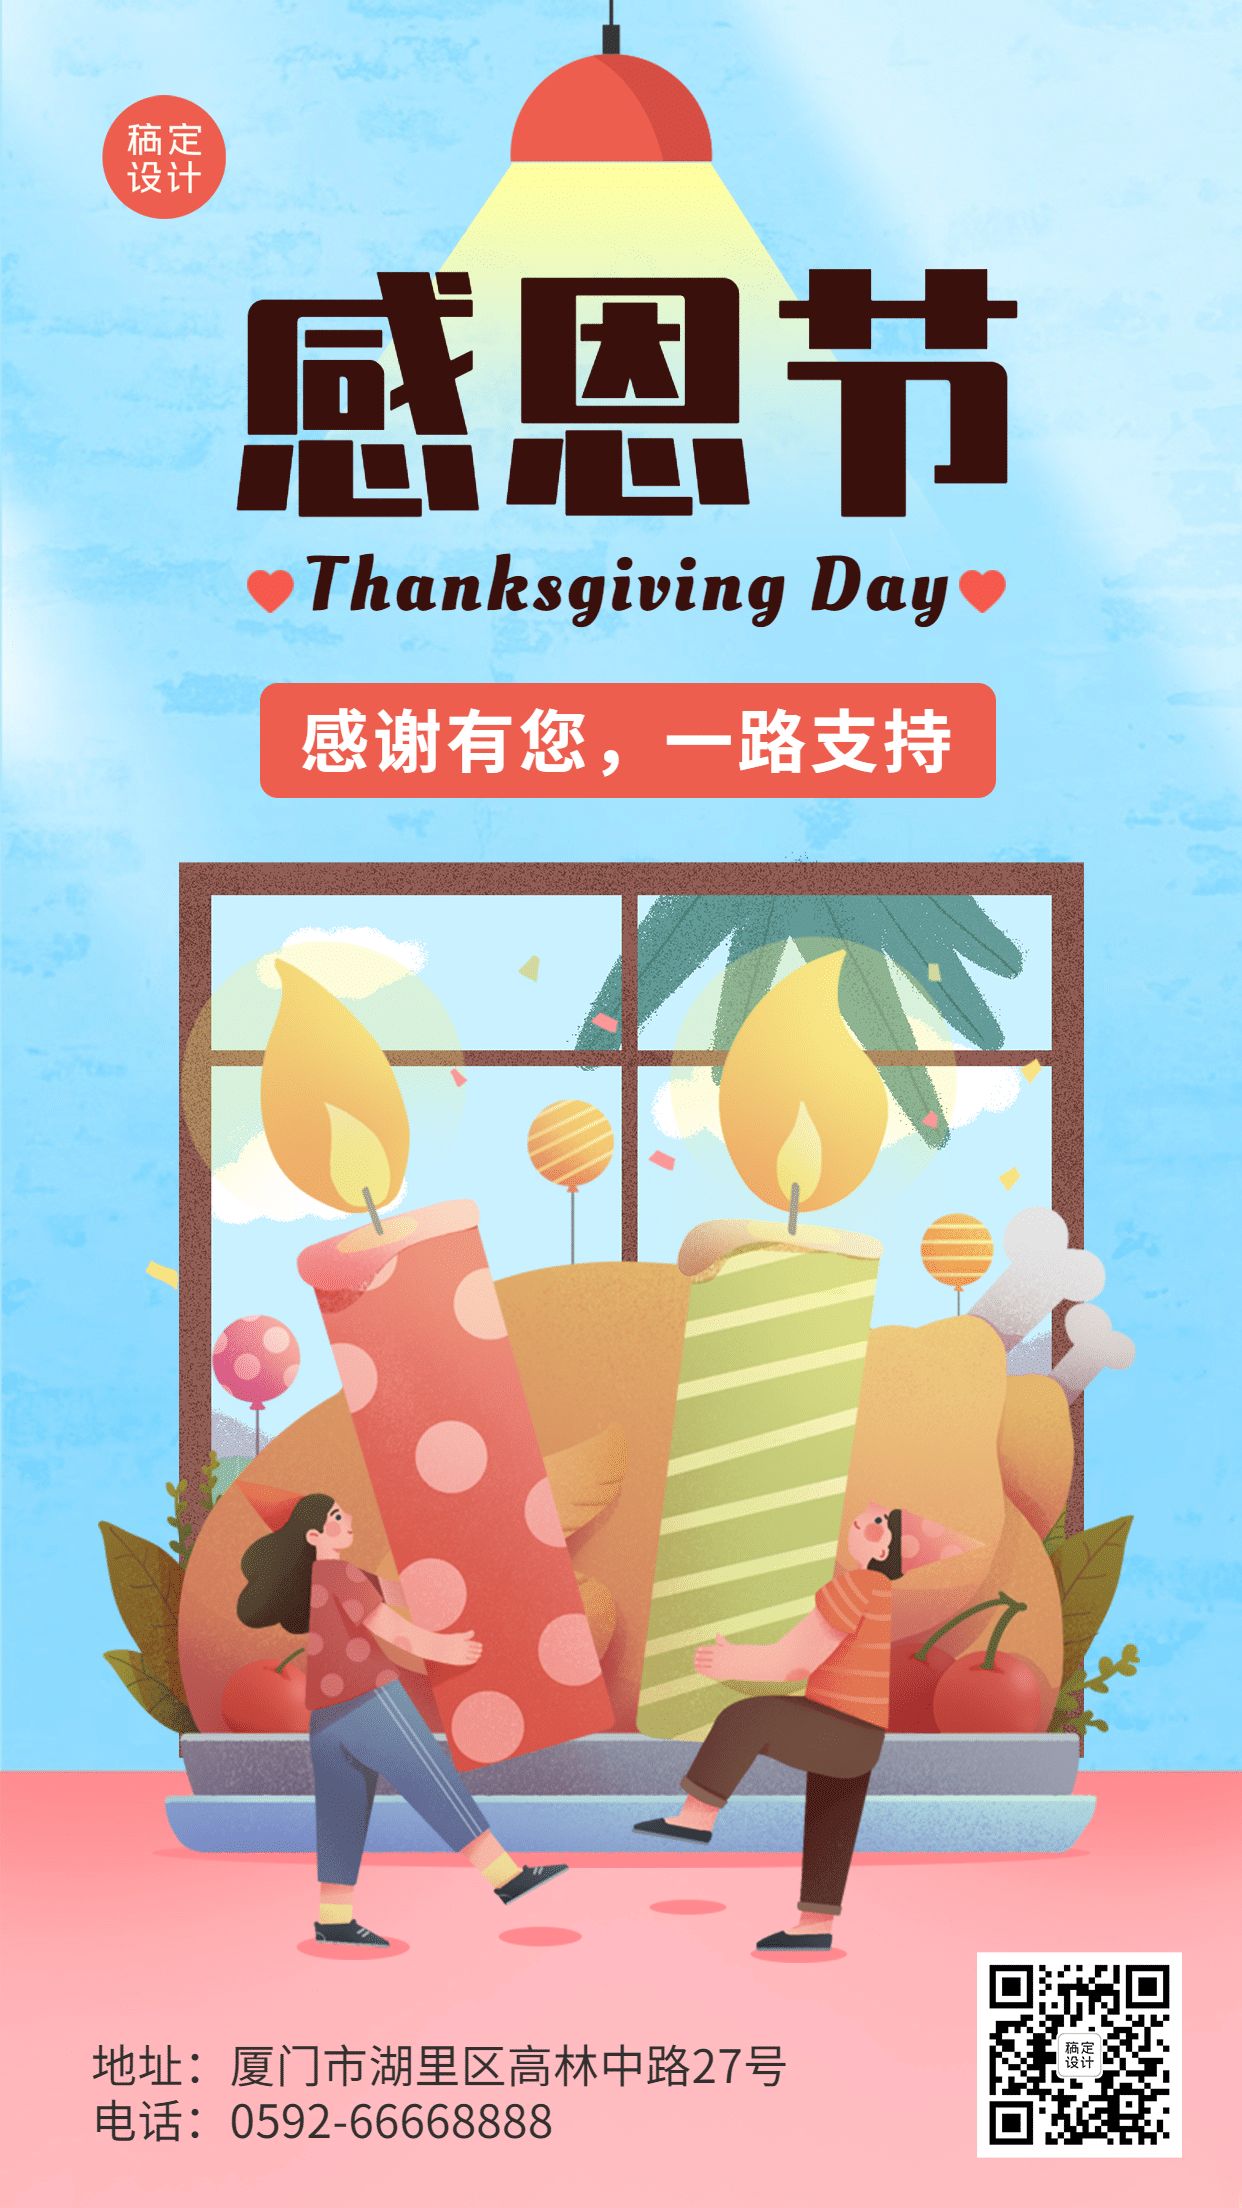 感恩节餐饮美食节日祝福卡通海报